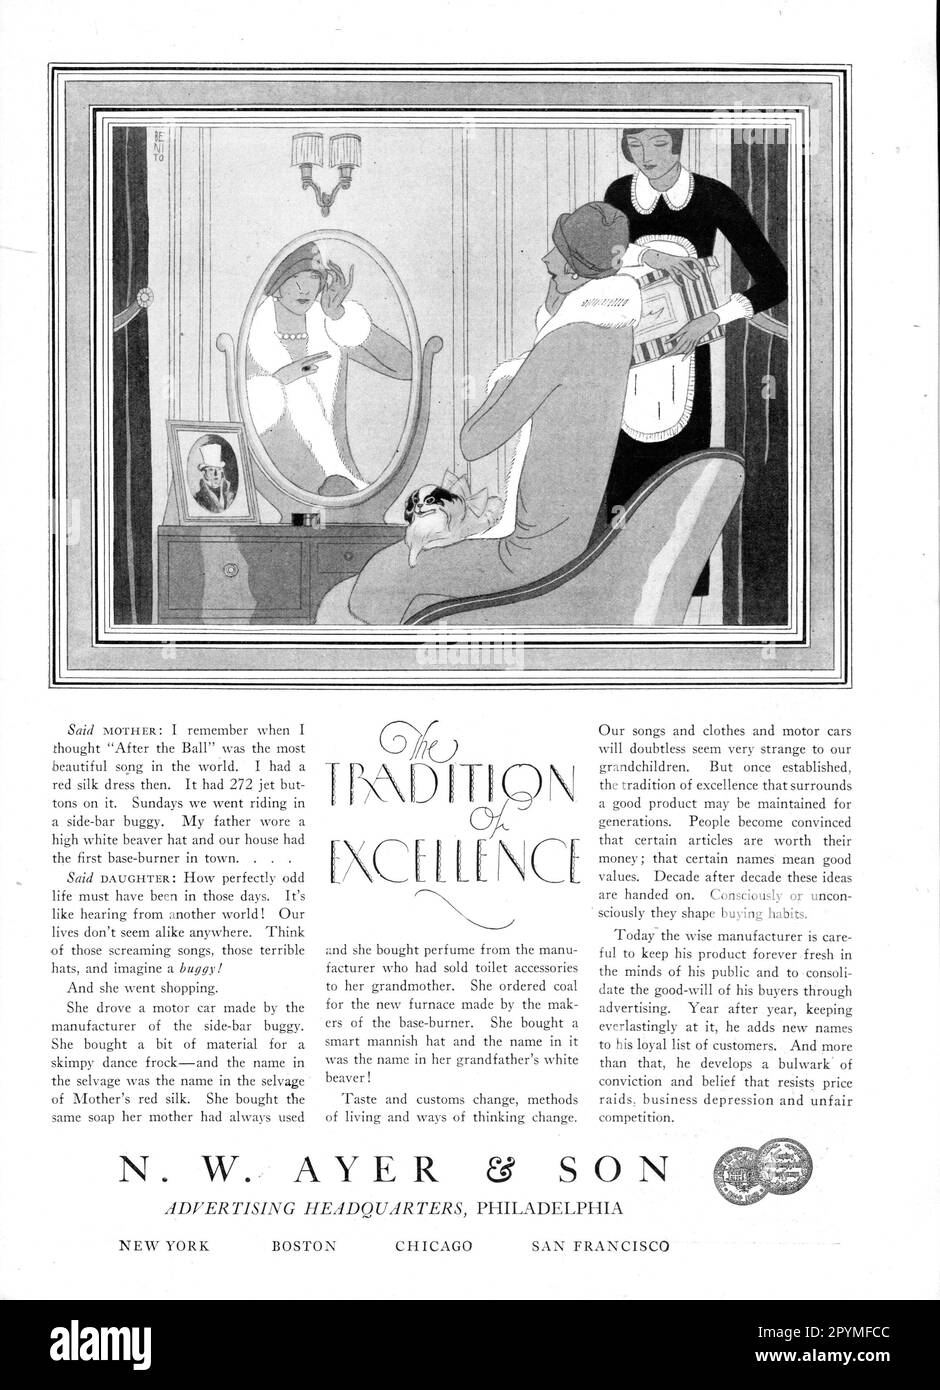 N.Y. Ayer and Son 'la tradizione di eccellenza' pubblicità antica, formato poster, A3 Foto Stock